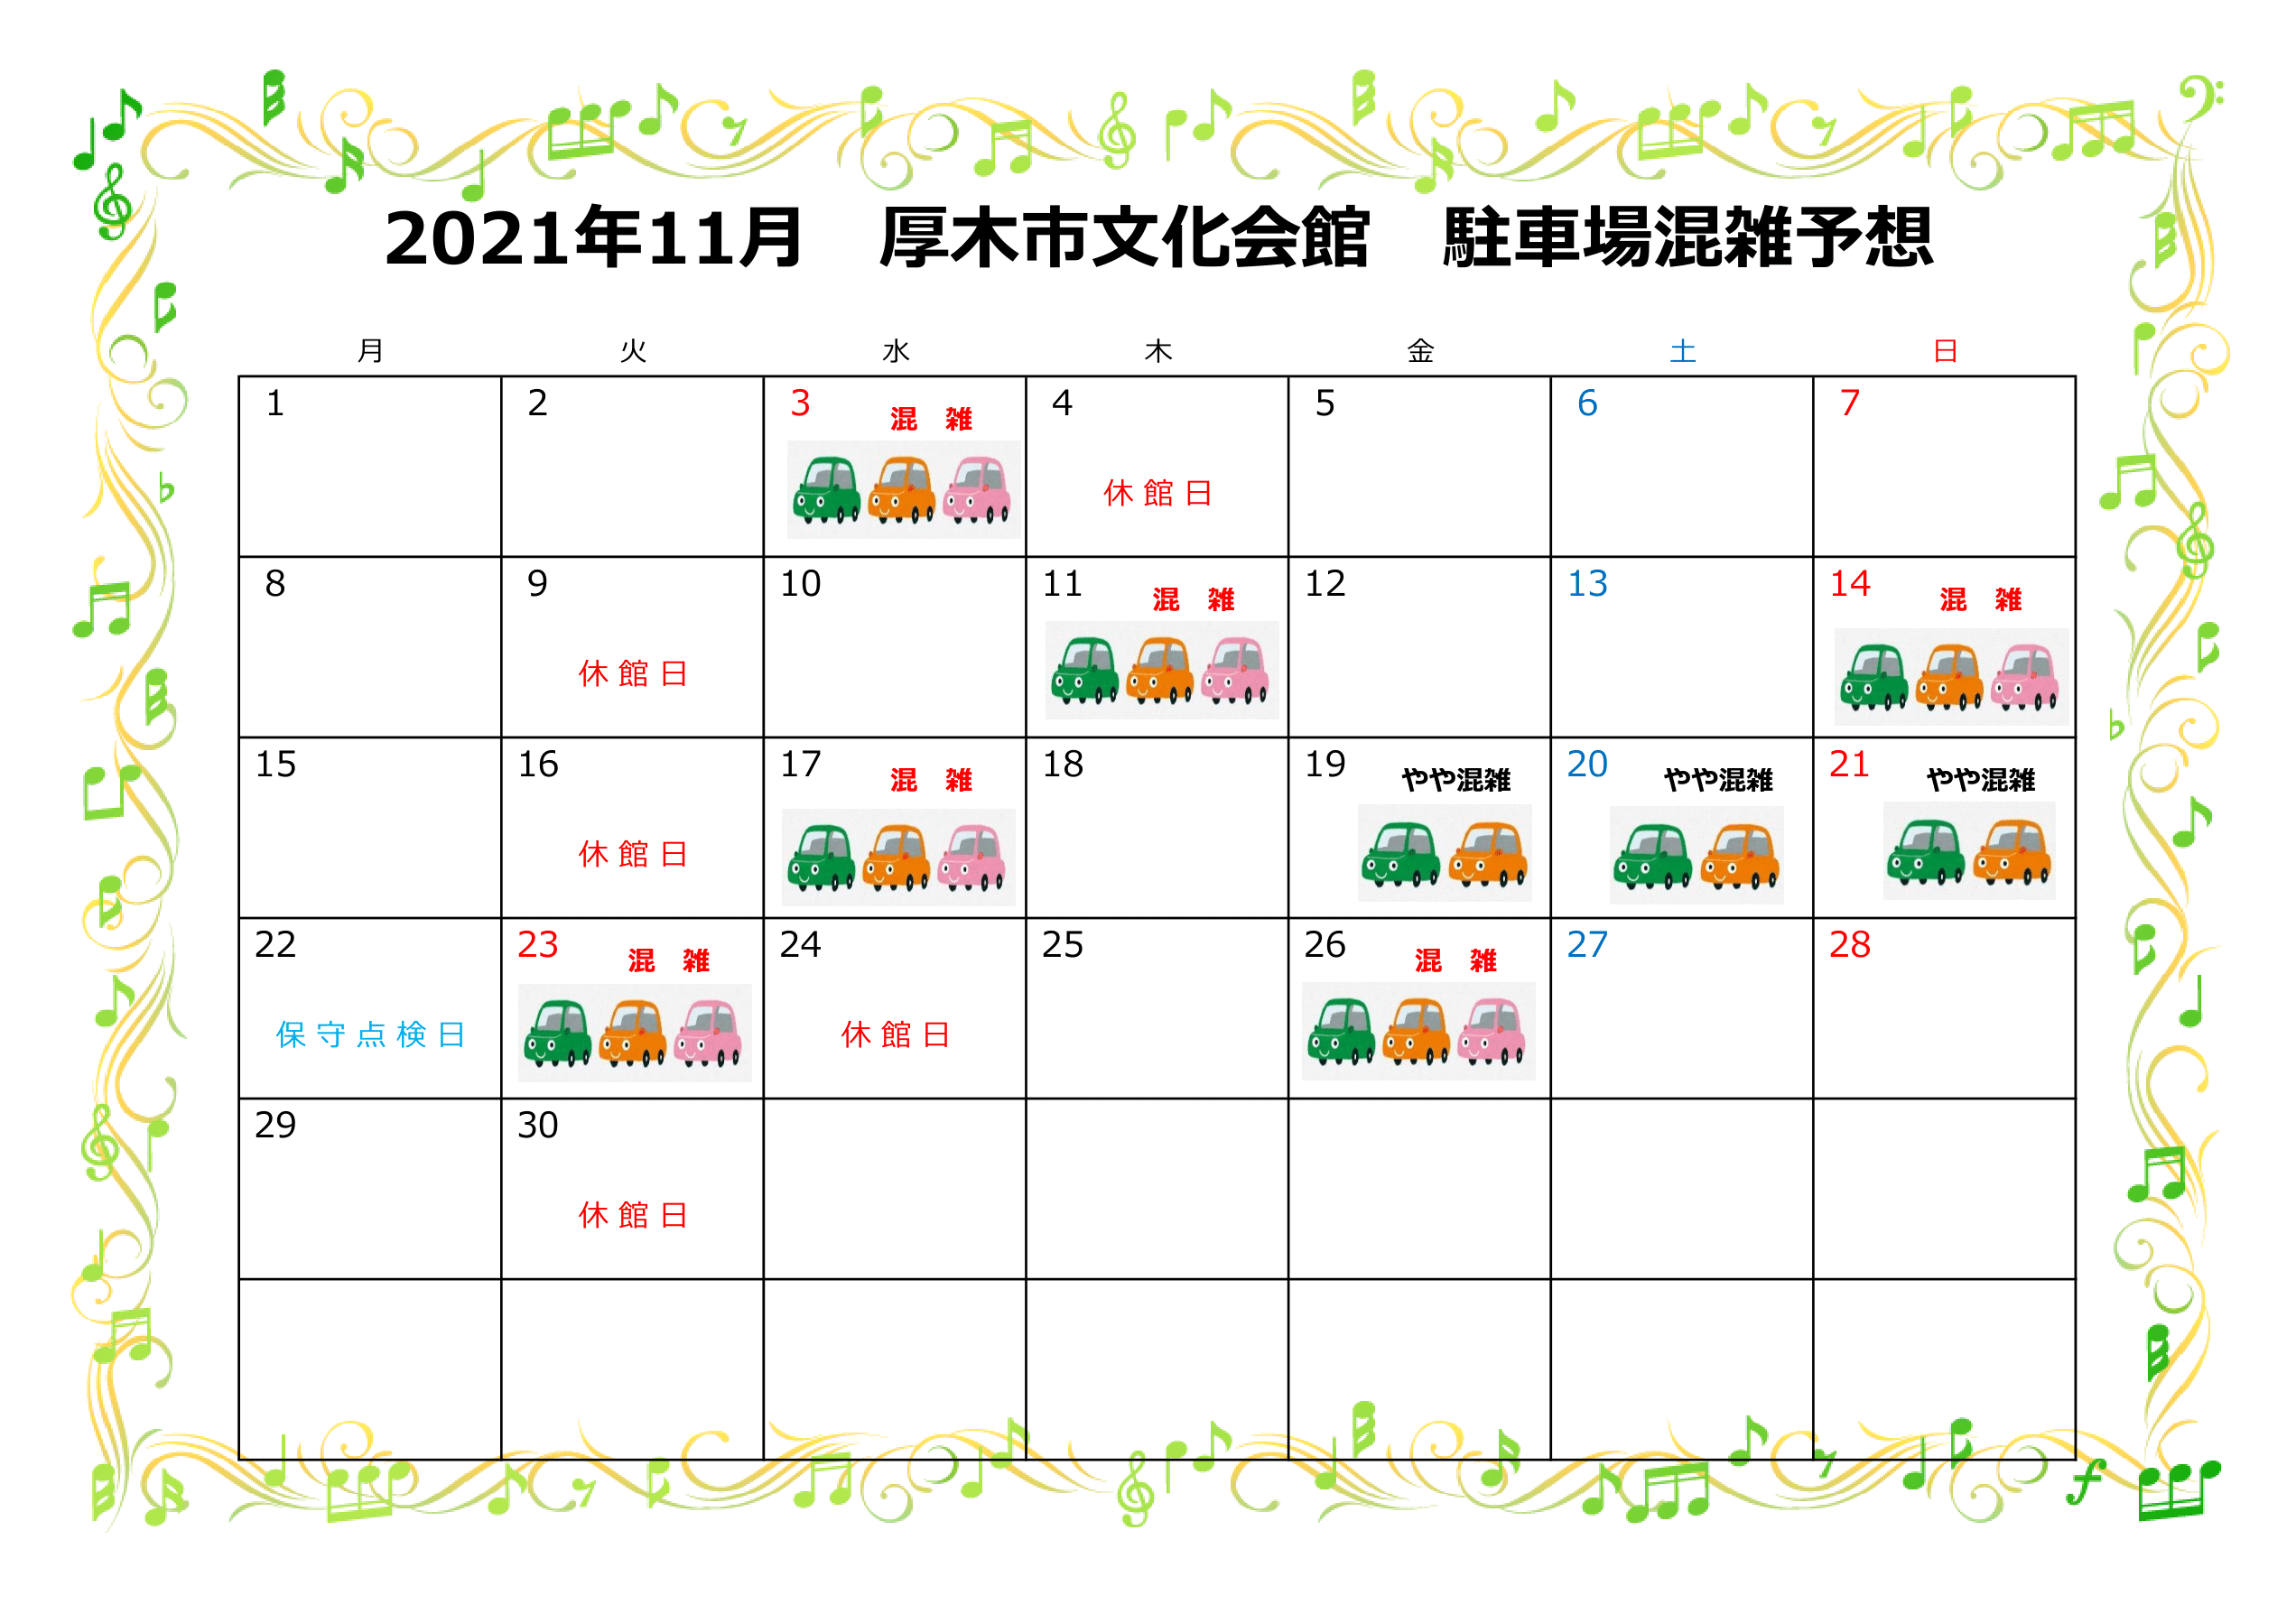 https://atsugi-bunka.jp/topics/img/2021.11-1-1.png